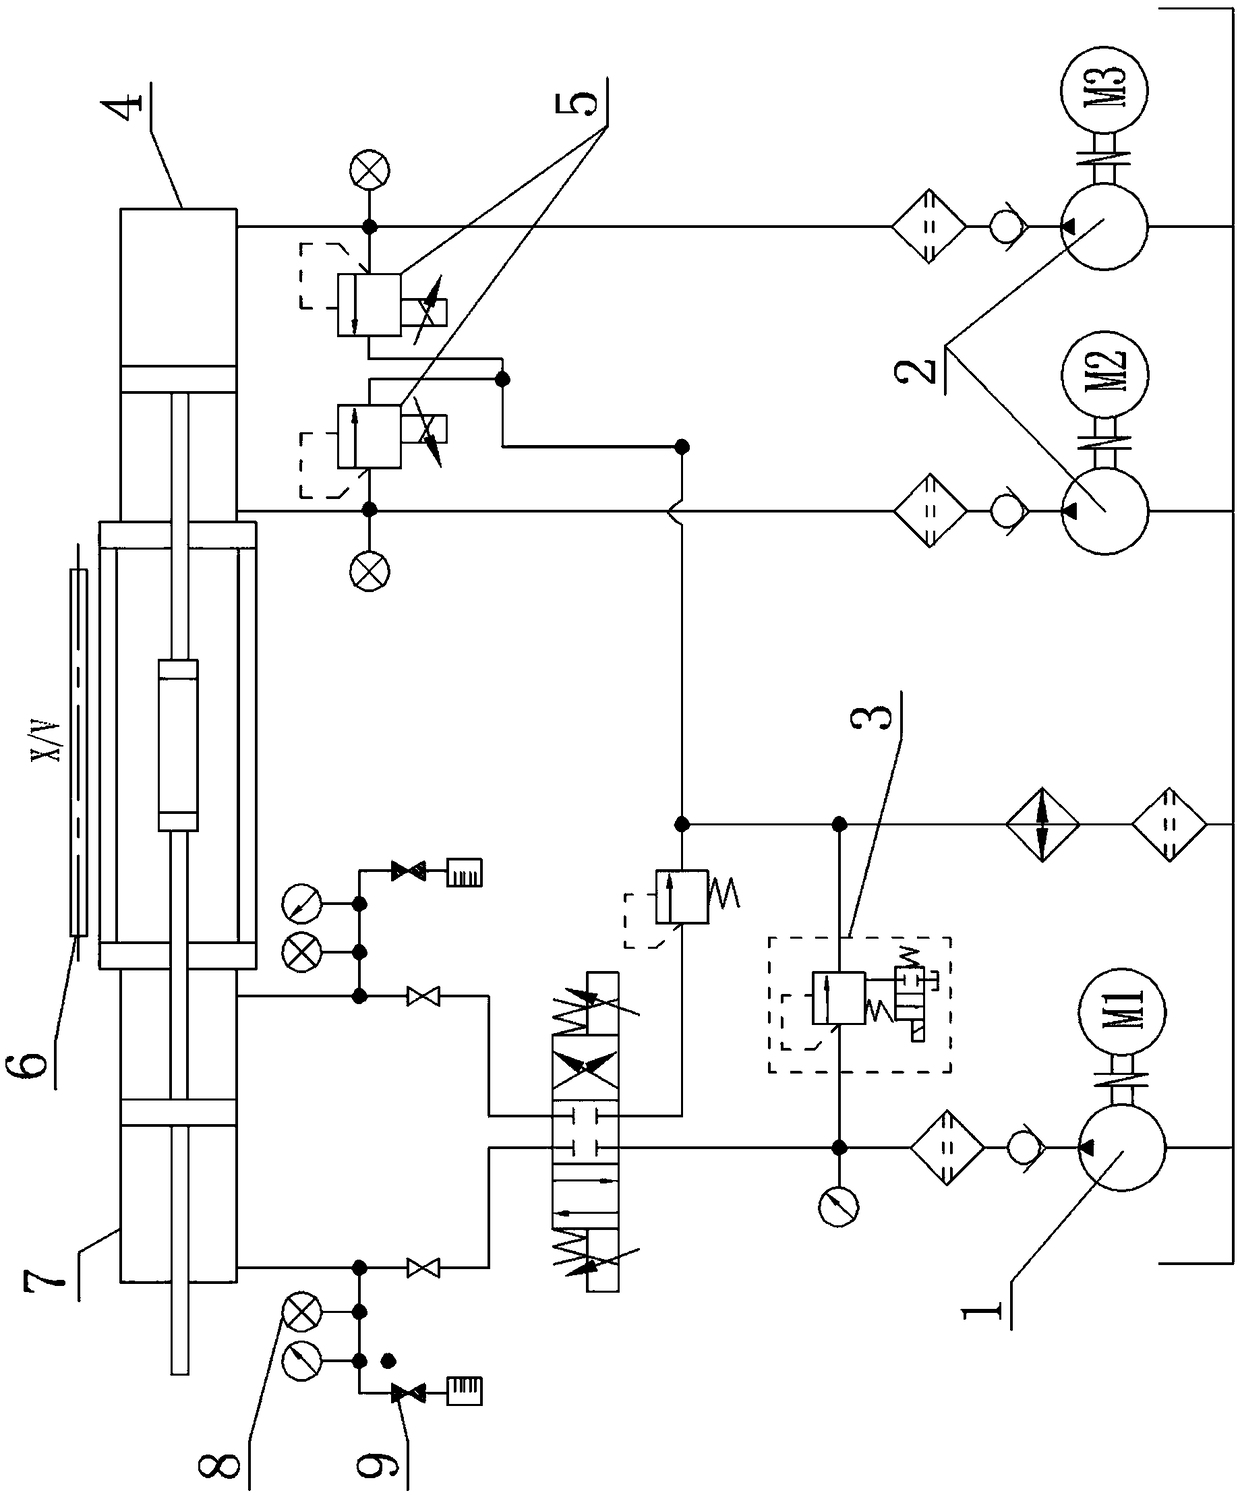 Symmetric control method for asymmetric hydraulic system based on output feedback